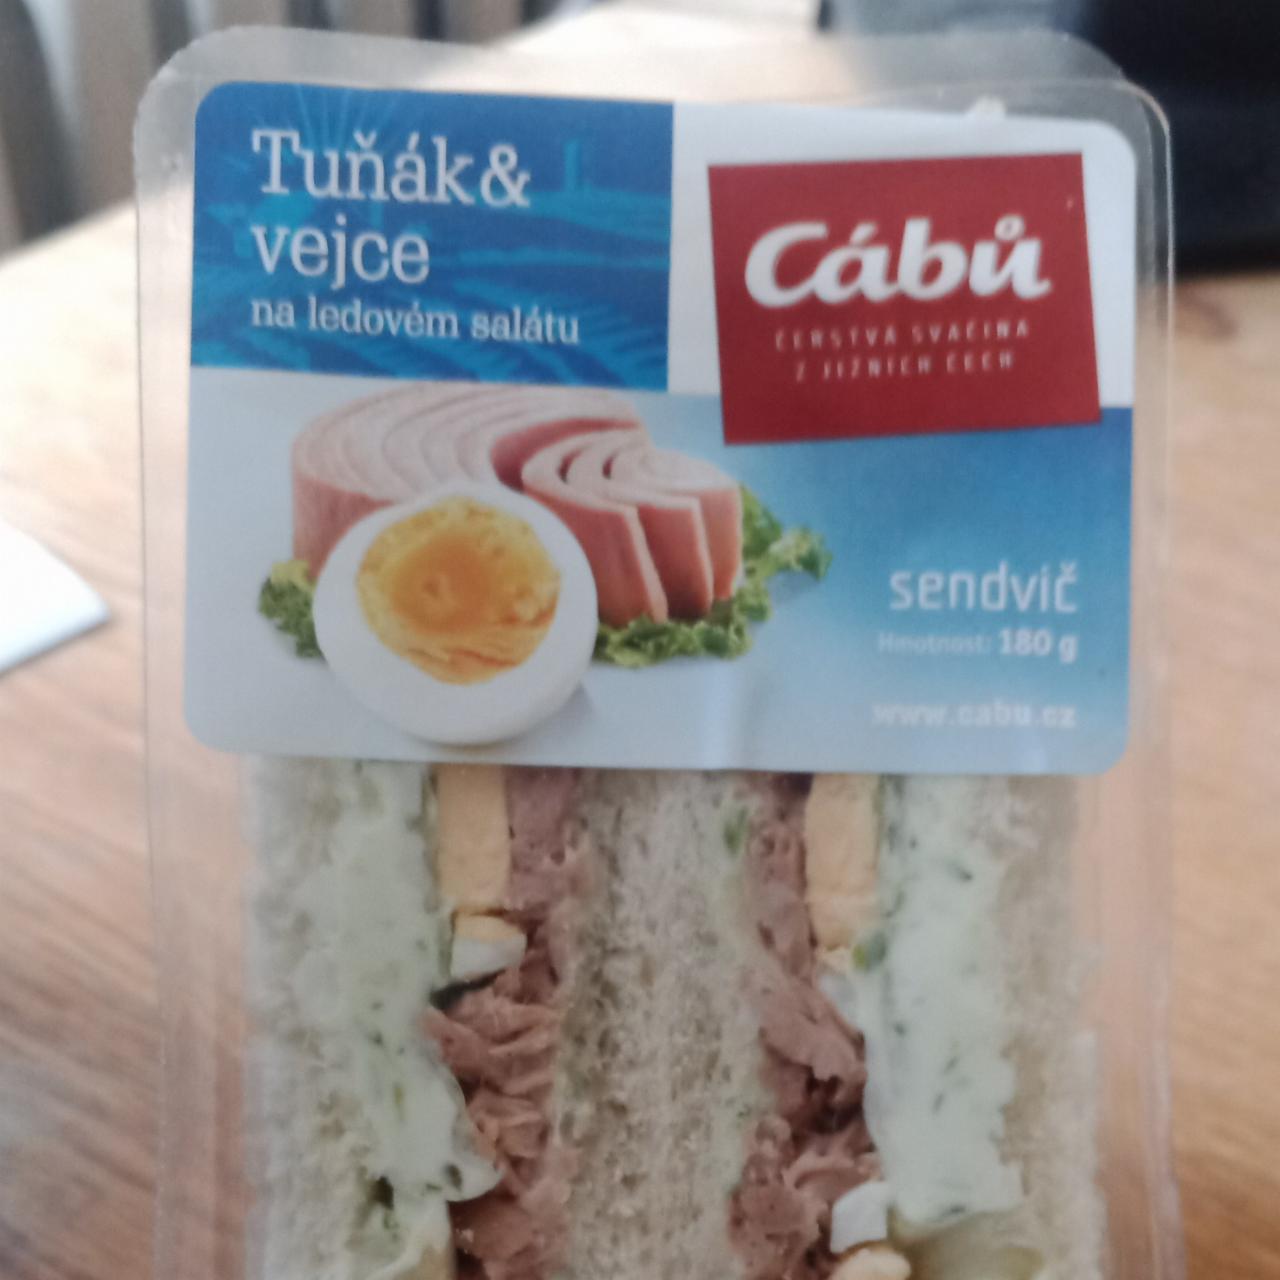 Fotografie - Tuňák & vejce na ledovém salátu sendvič Cábů